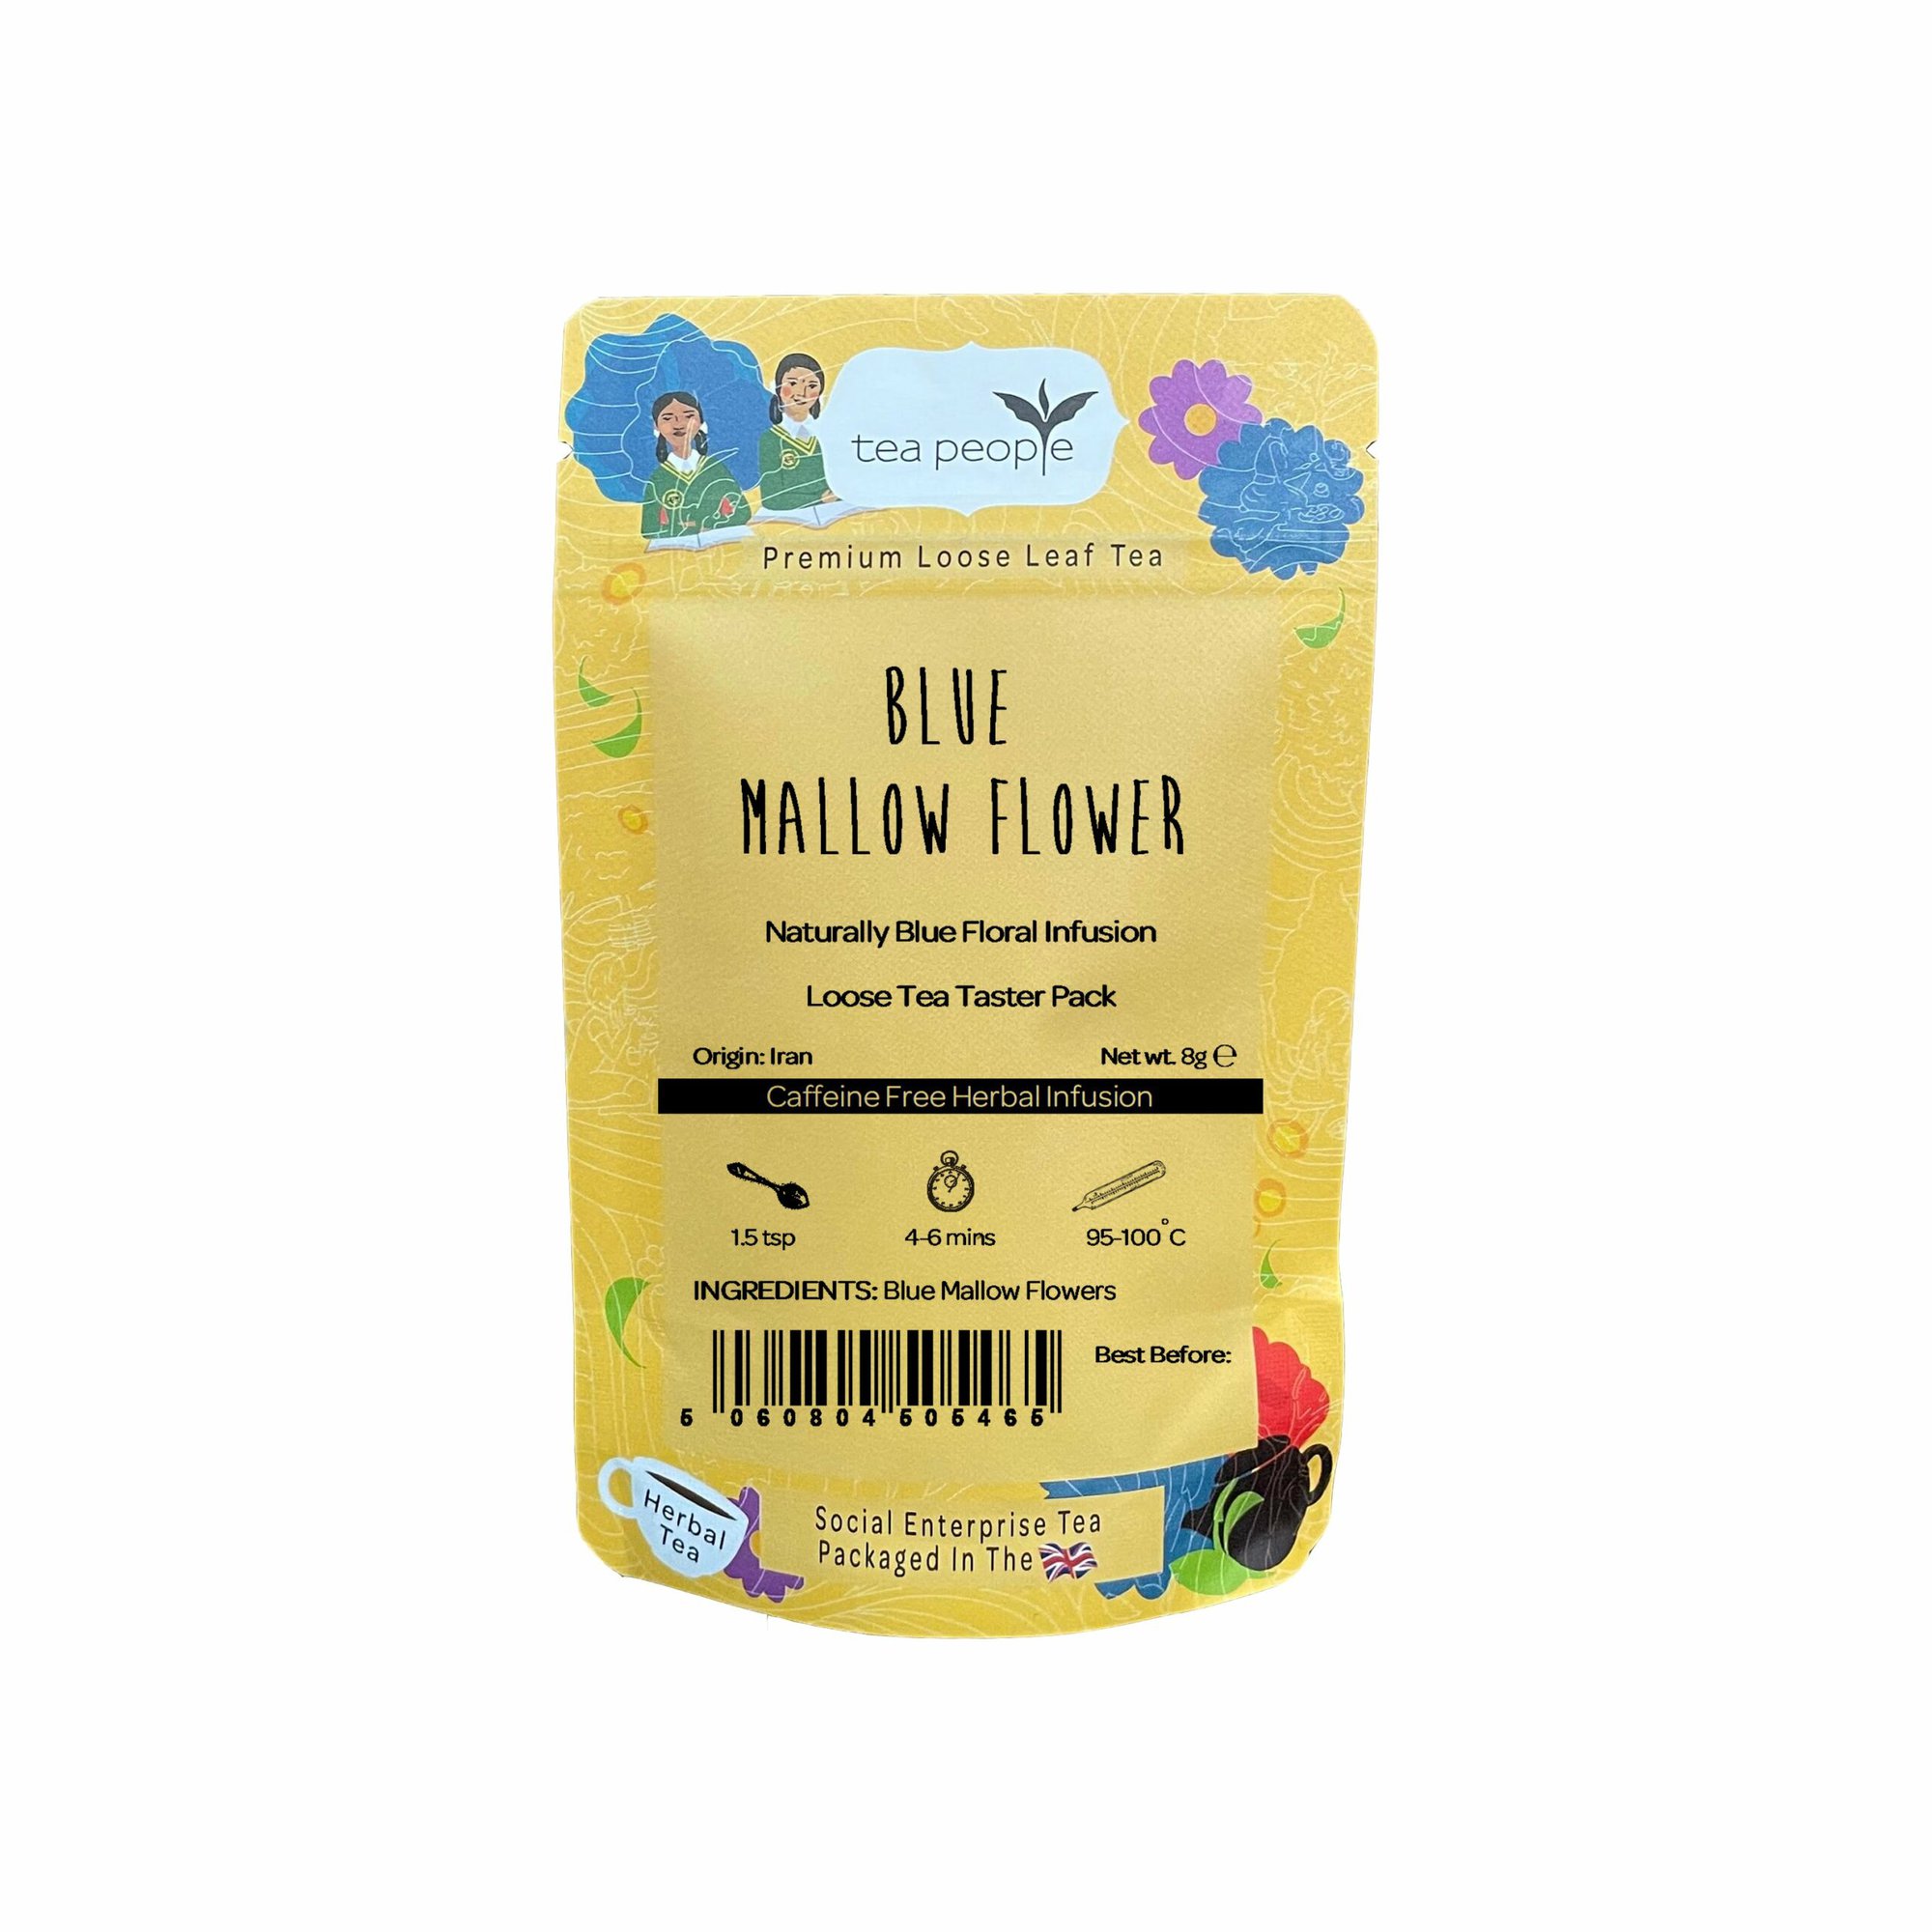 Blue Mallow Flower - Loose Herbal Tea - Taster Pack